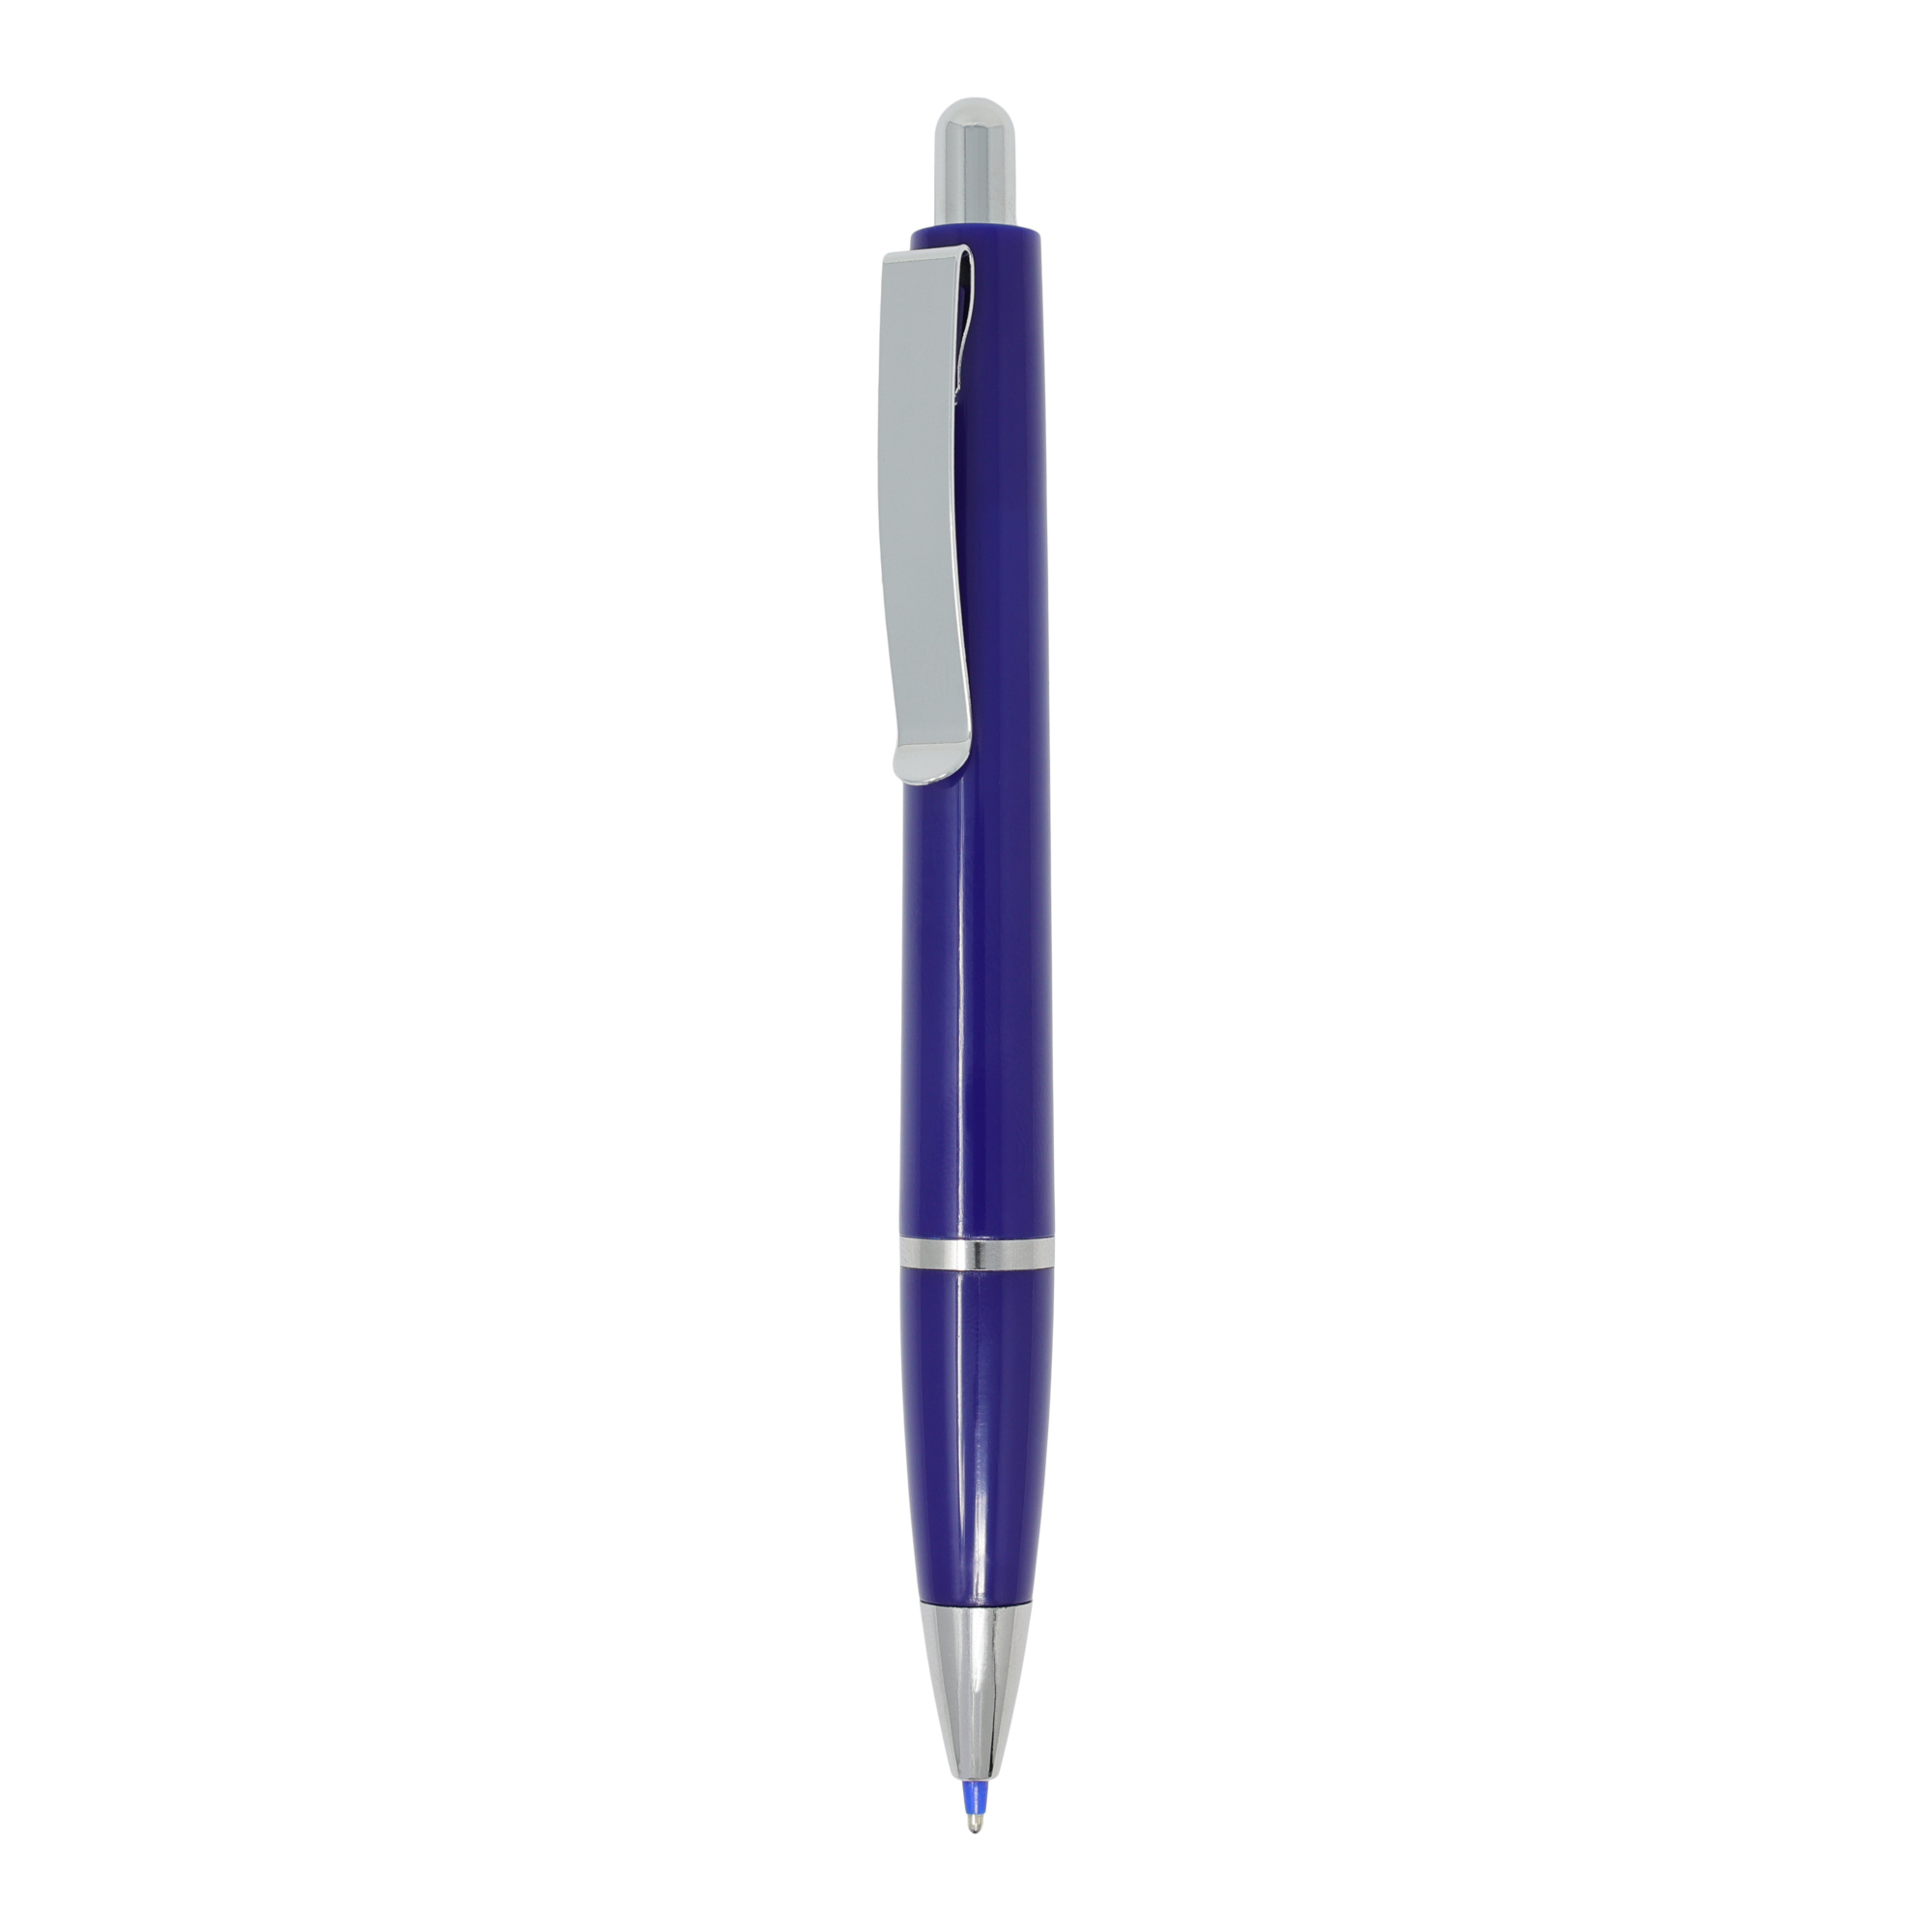 Bolígrafo Bespen
Color azul